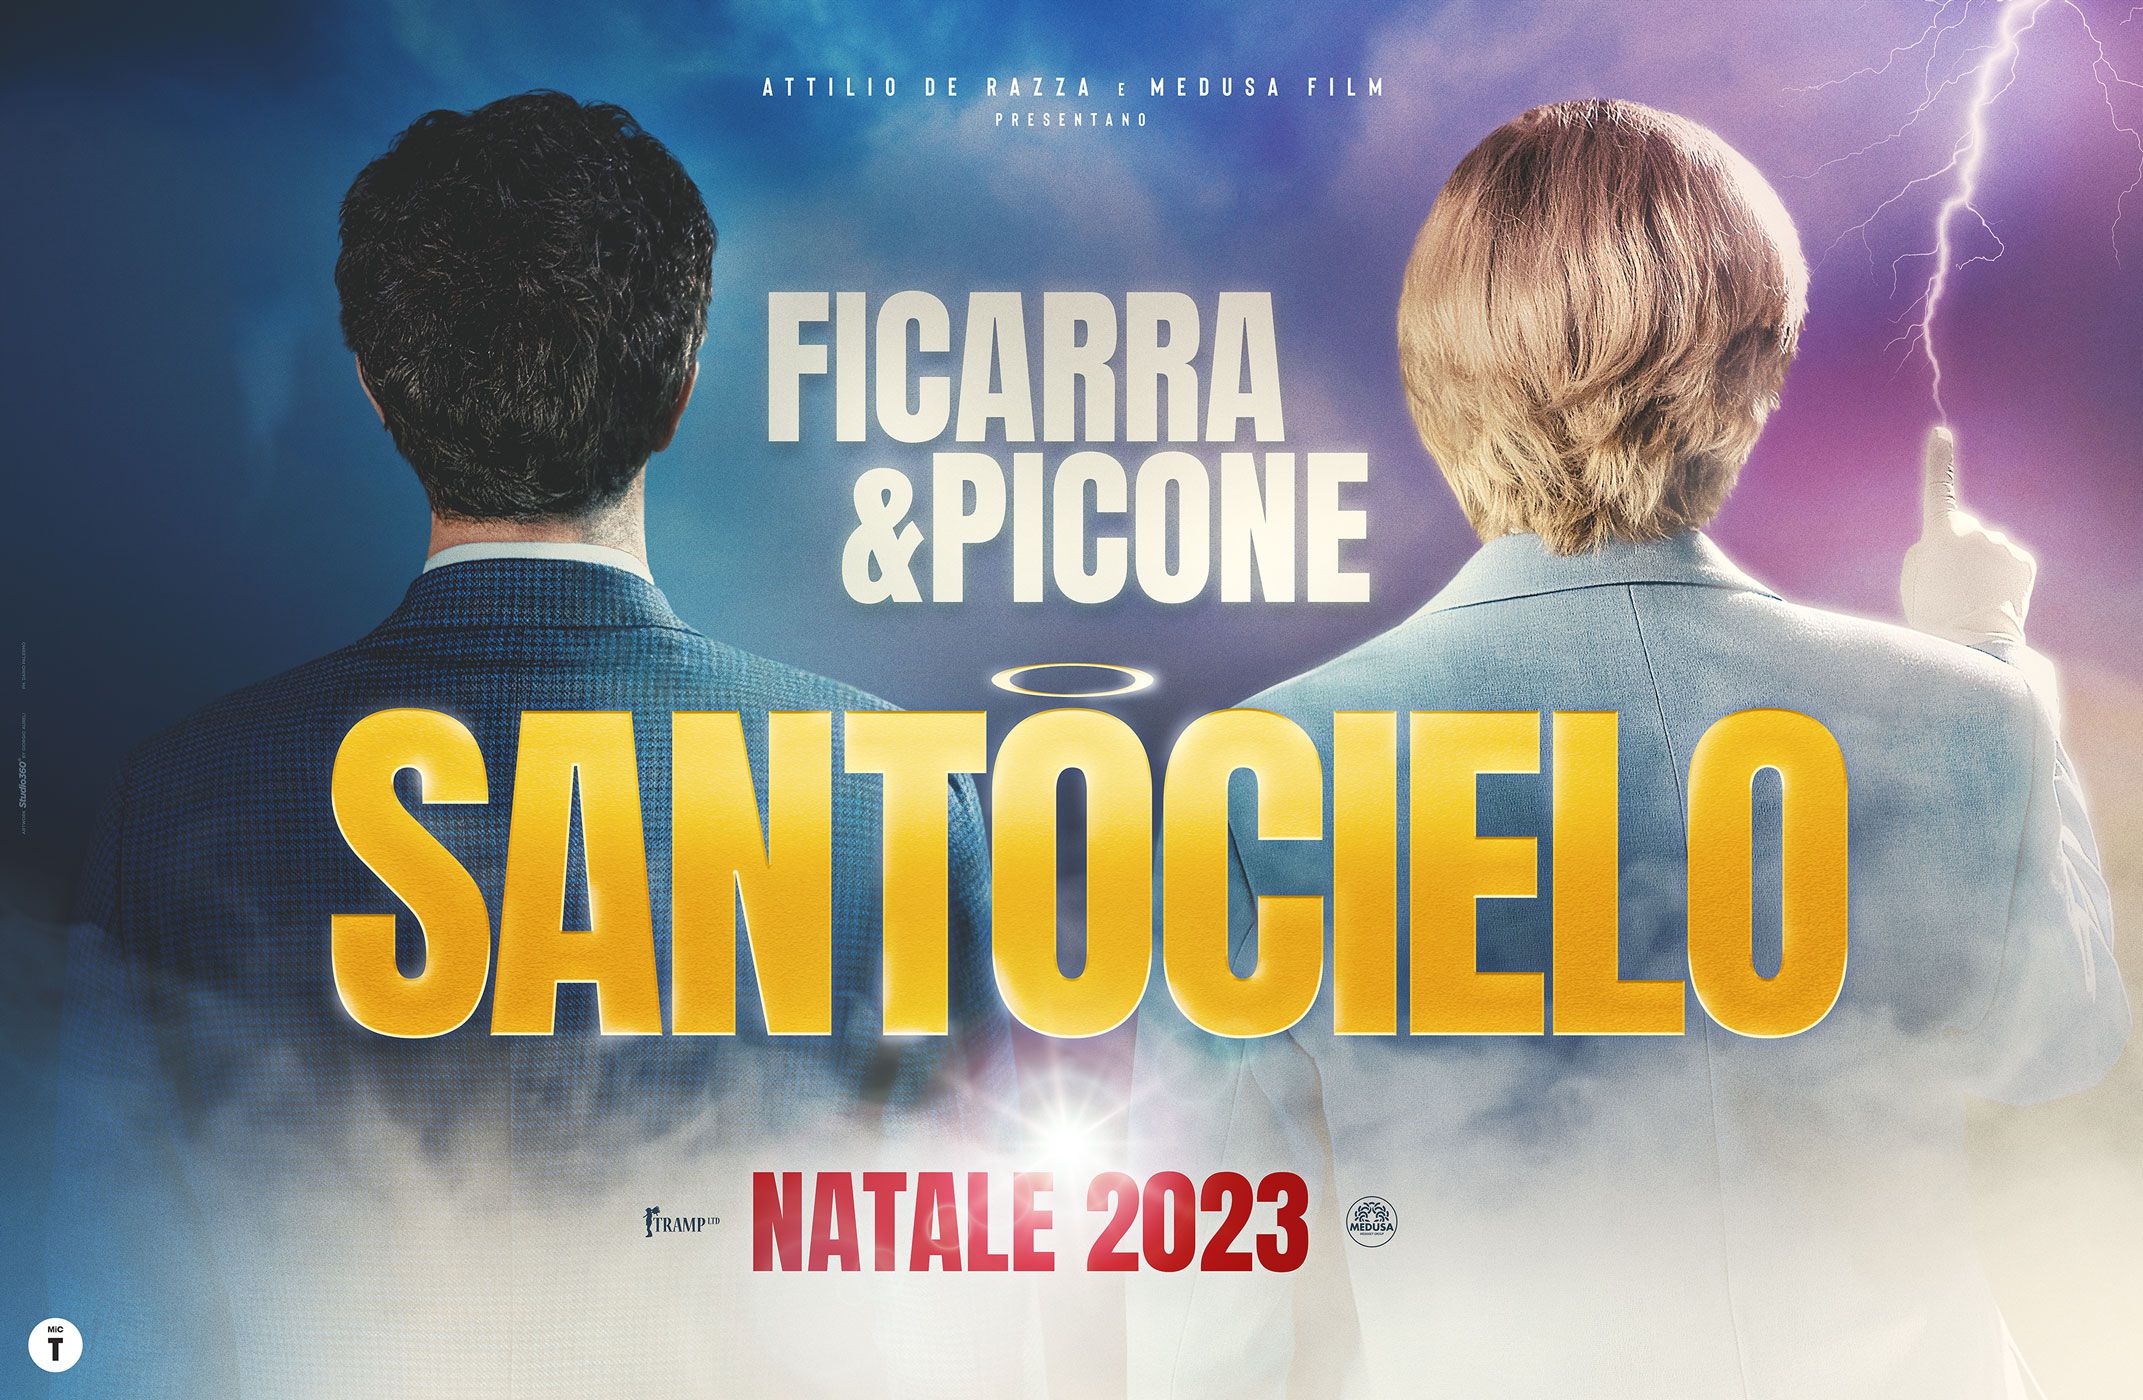 Il 14 dicembre al Garibaldi di Piazza Armerina il film “Santocielo” con Ficarra e Picone (prima nazionale)